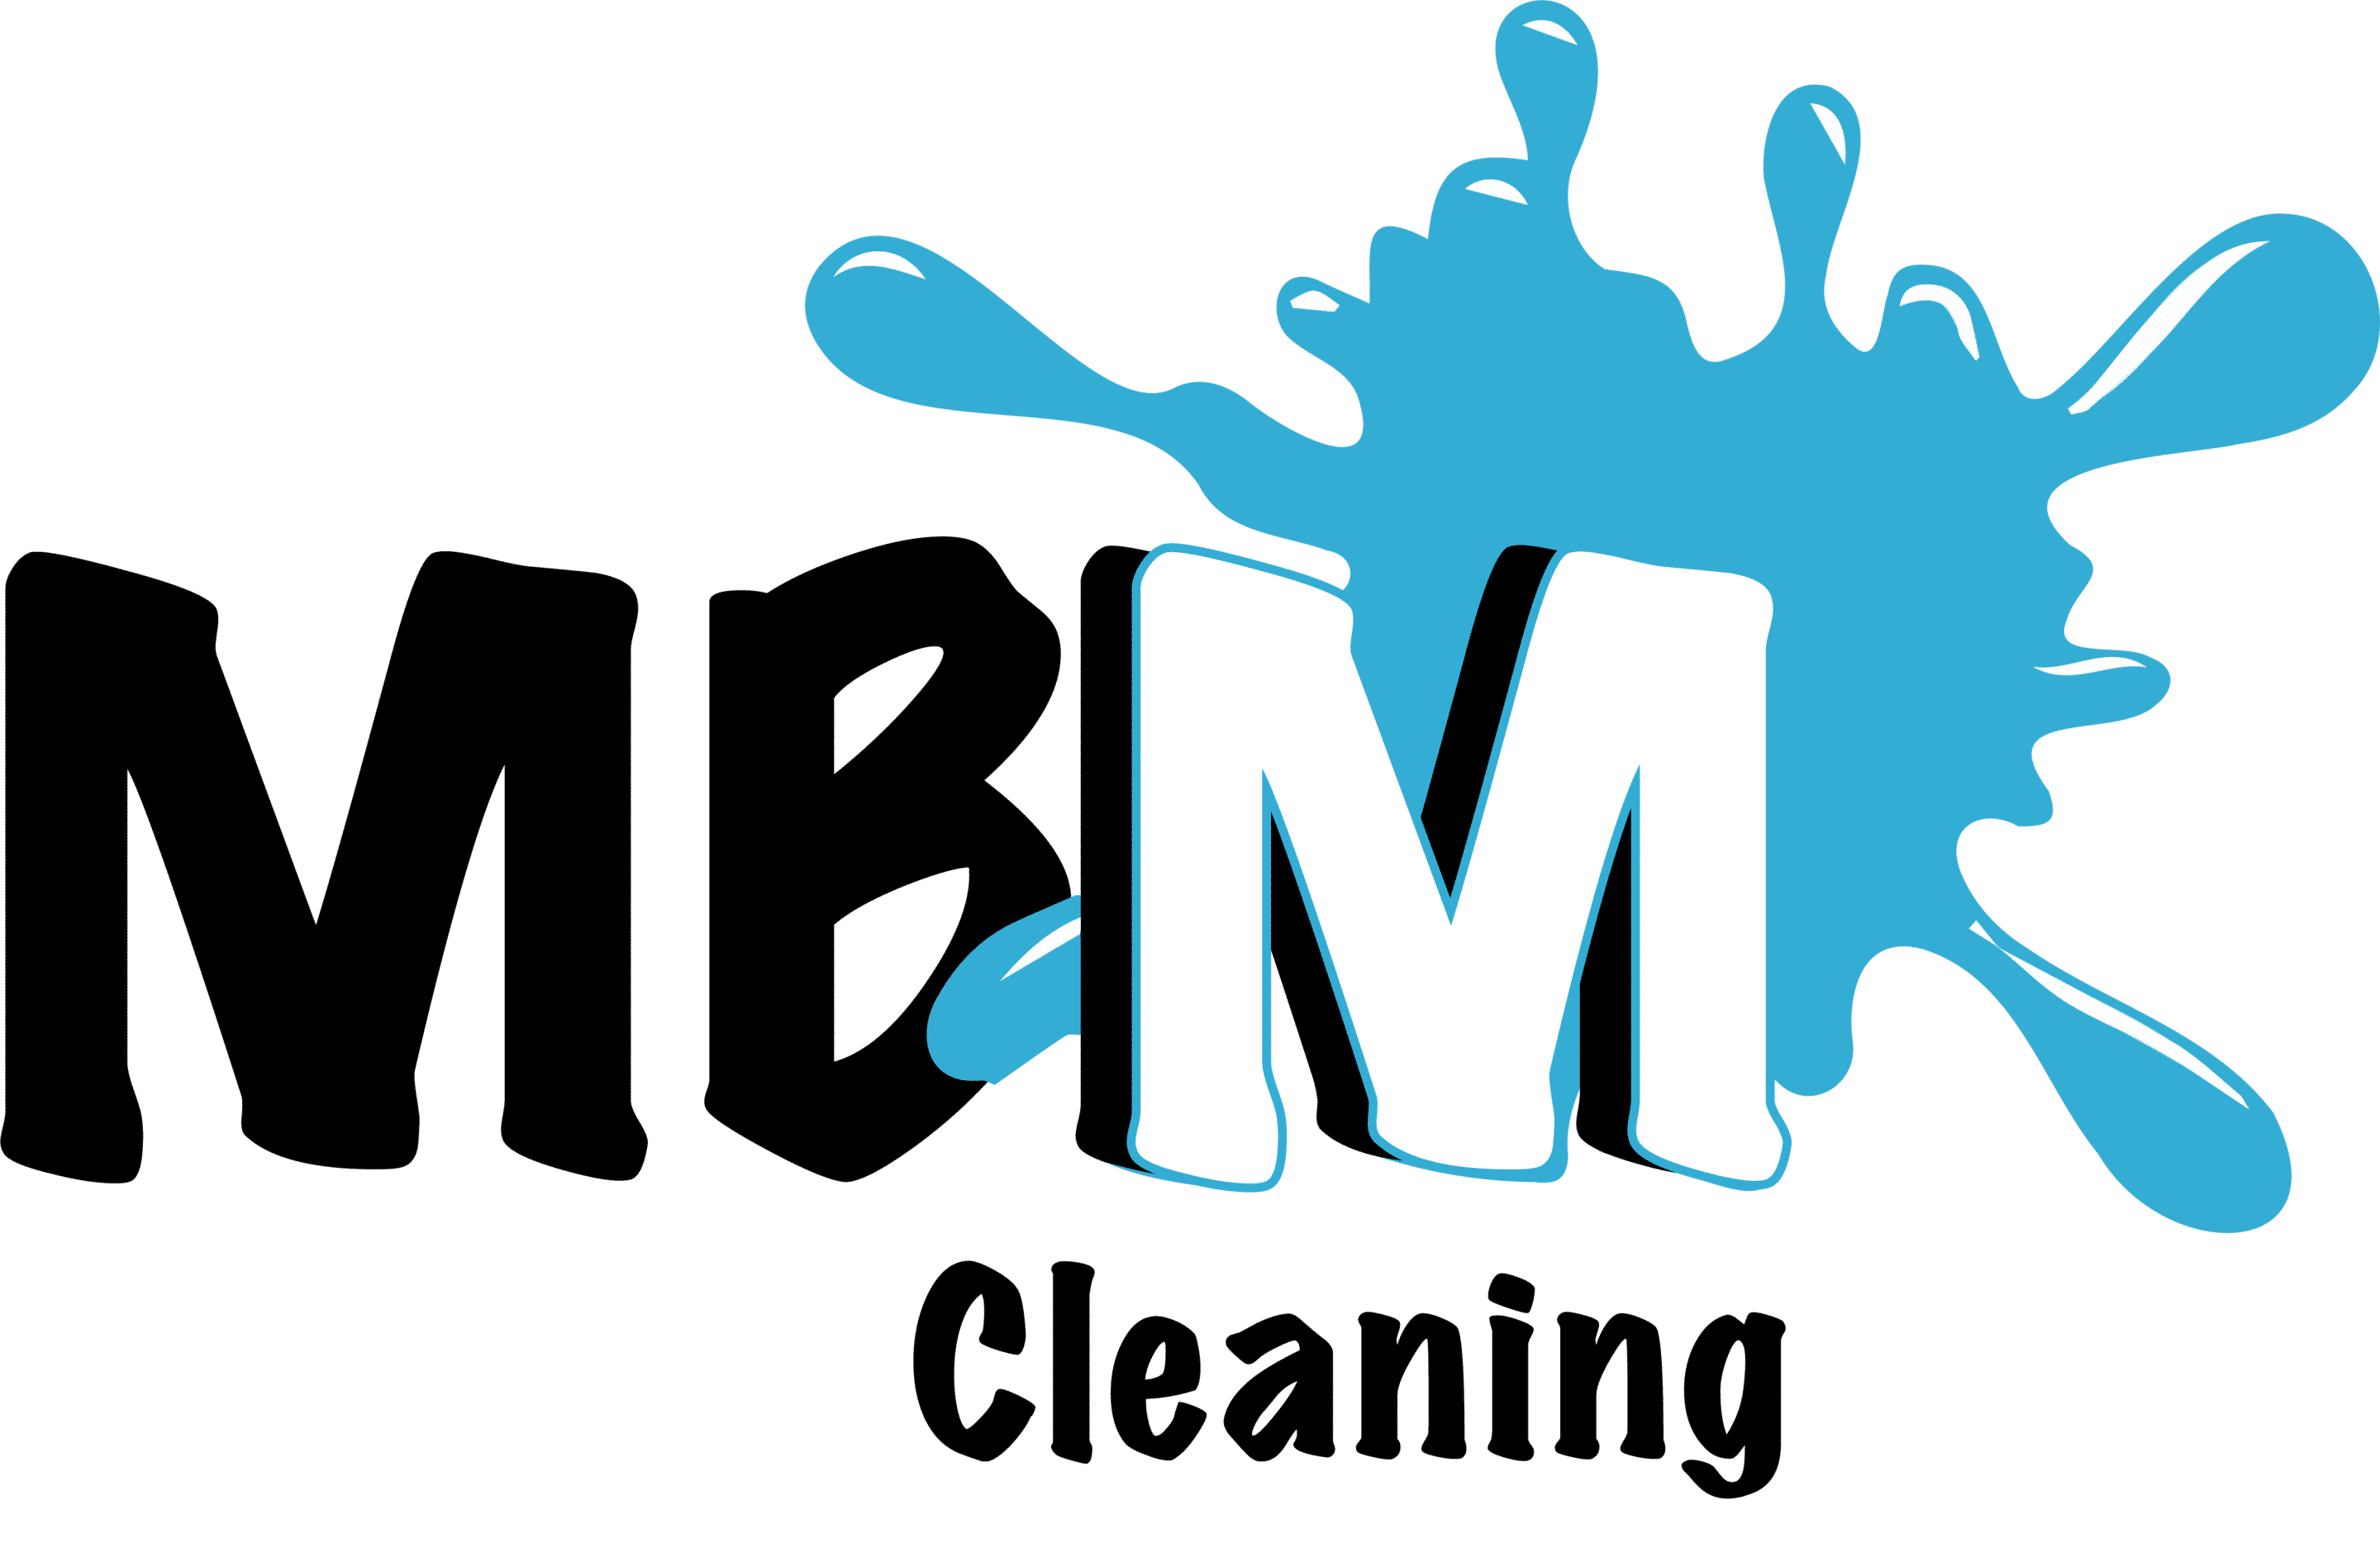 MBM entreprise de nettoyage spécialisée